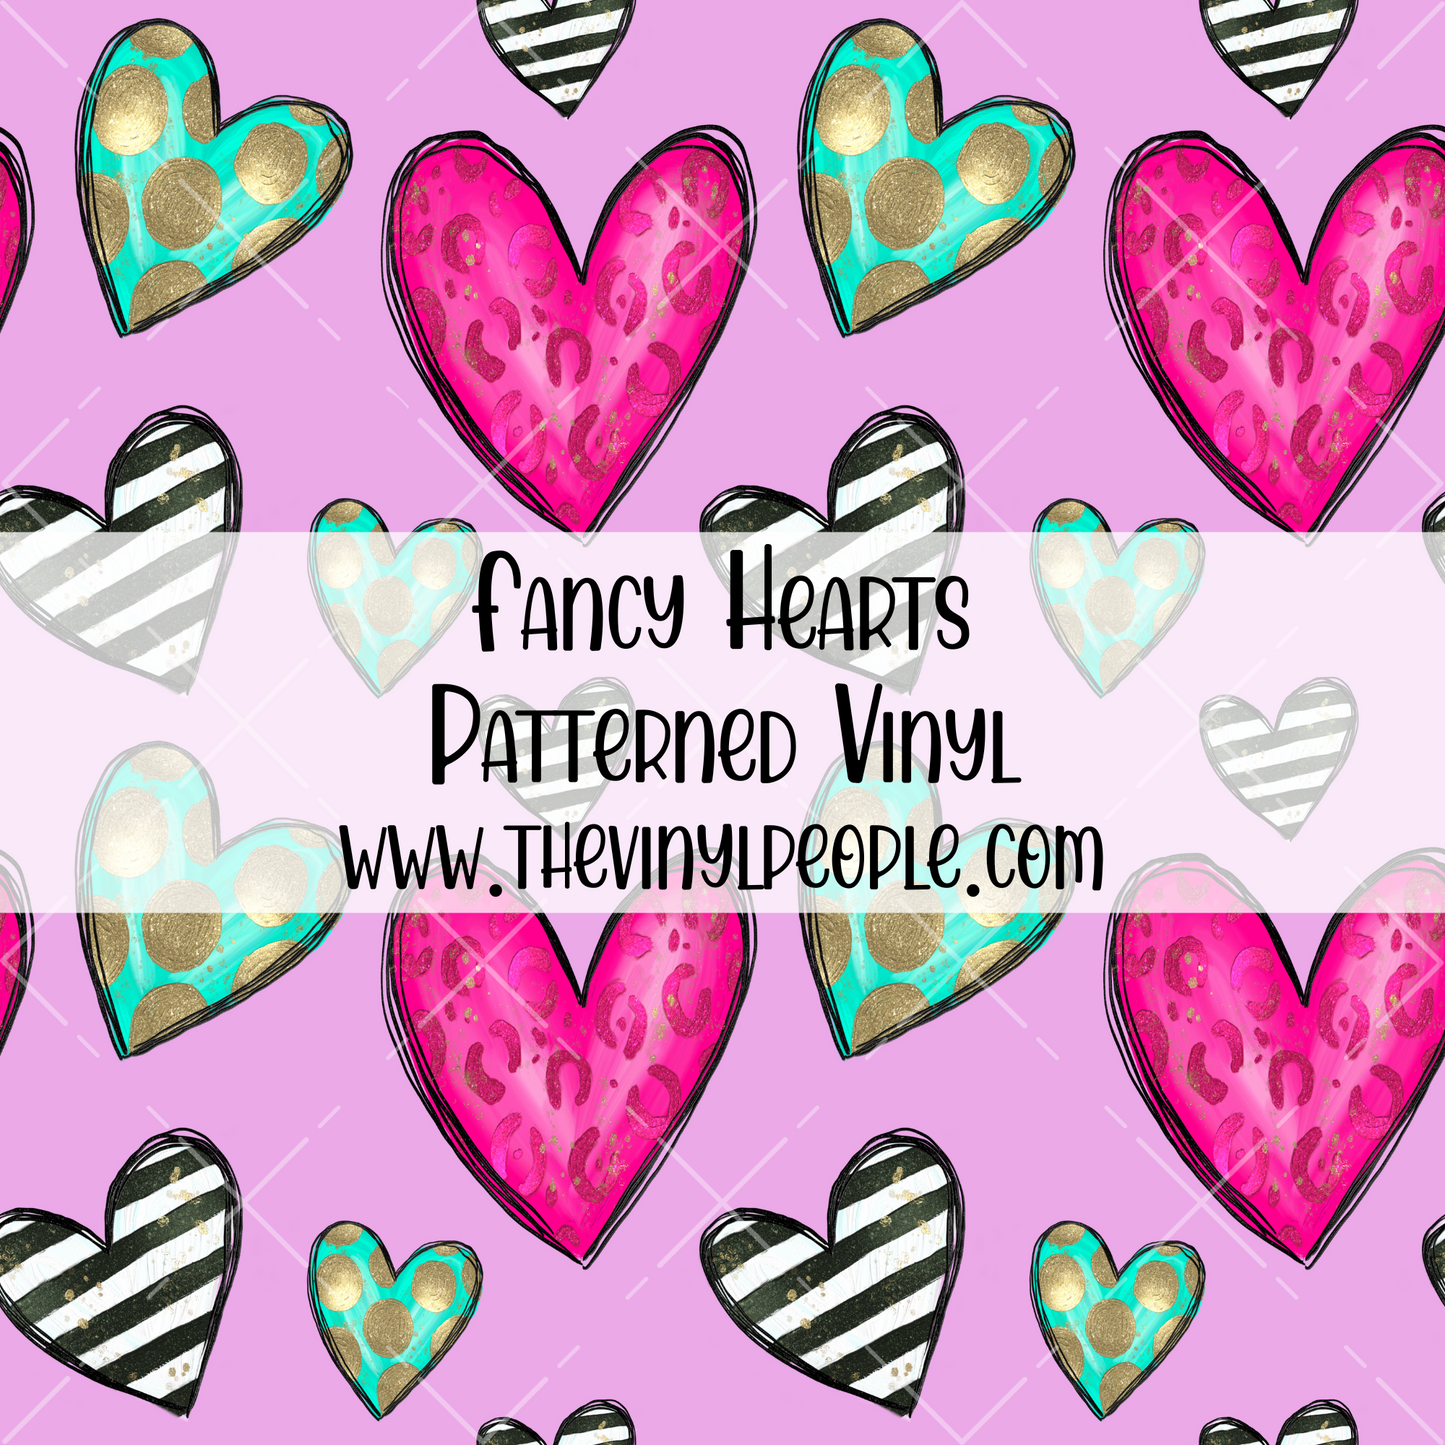 Fancy Hearts Patterned Vinyl